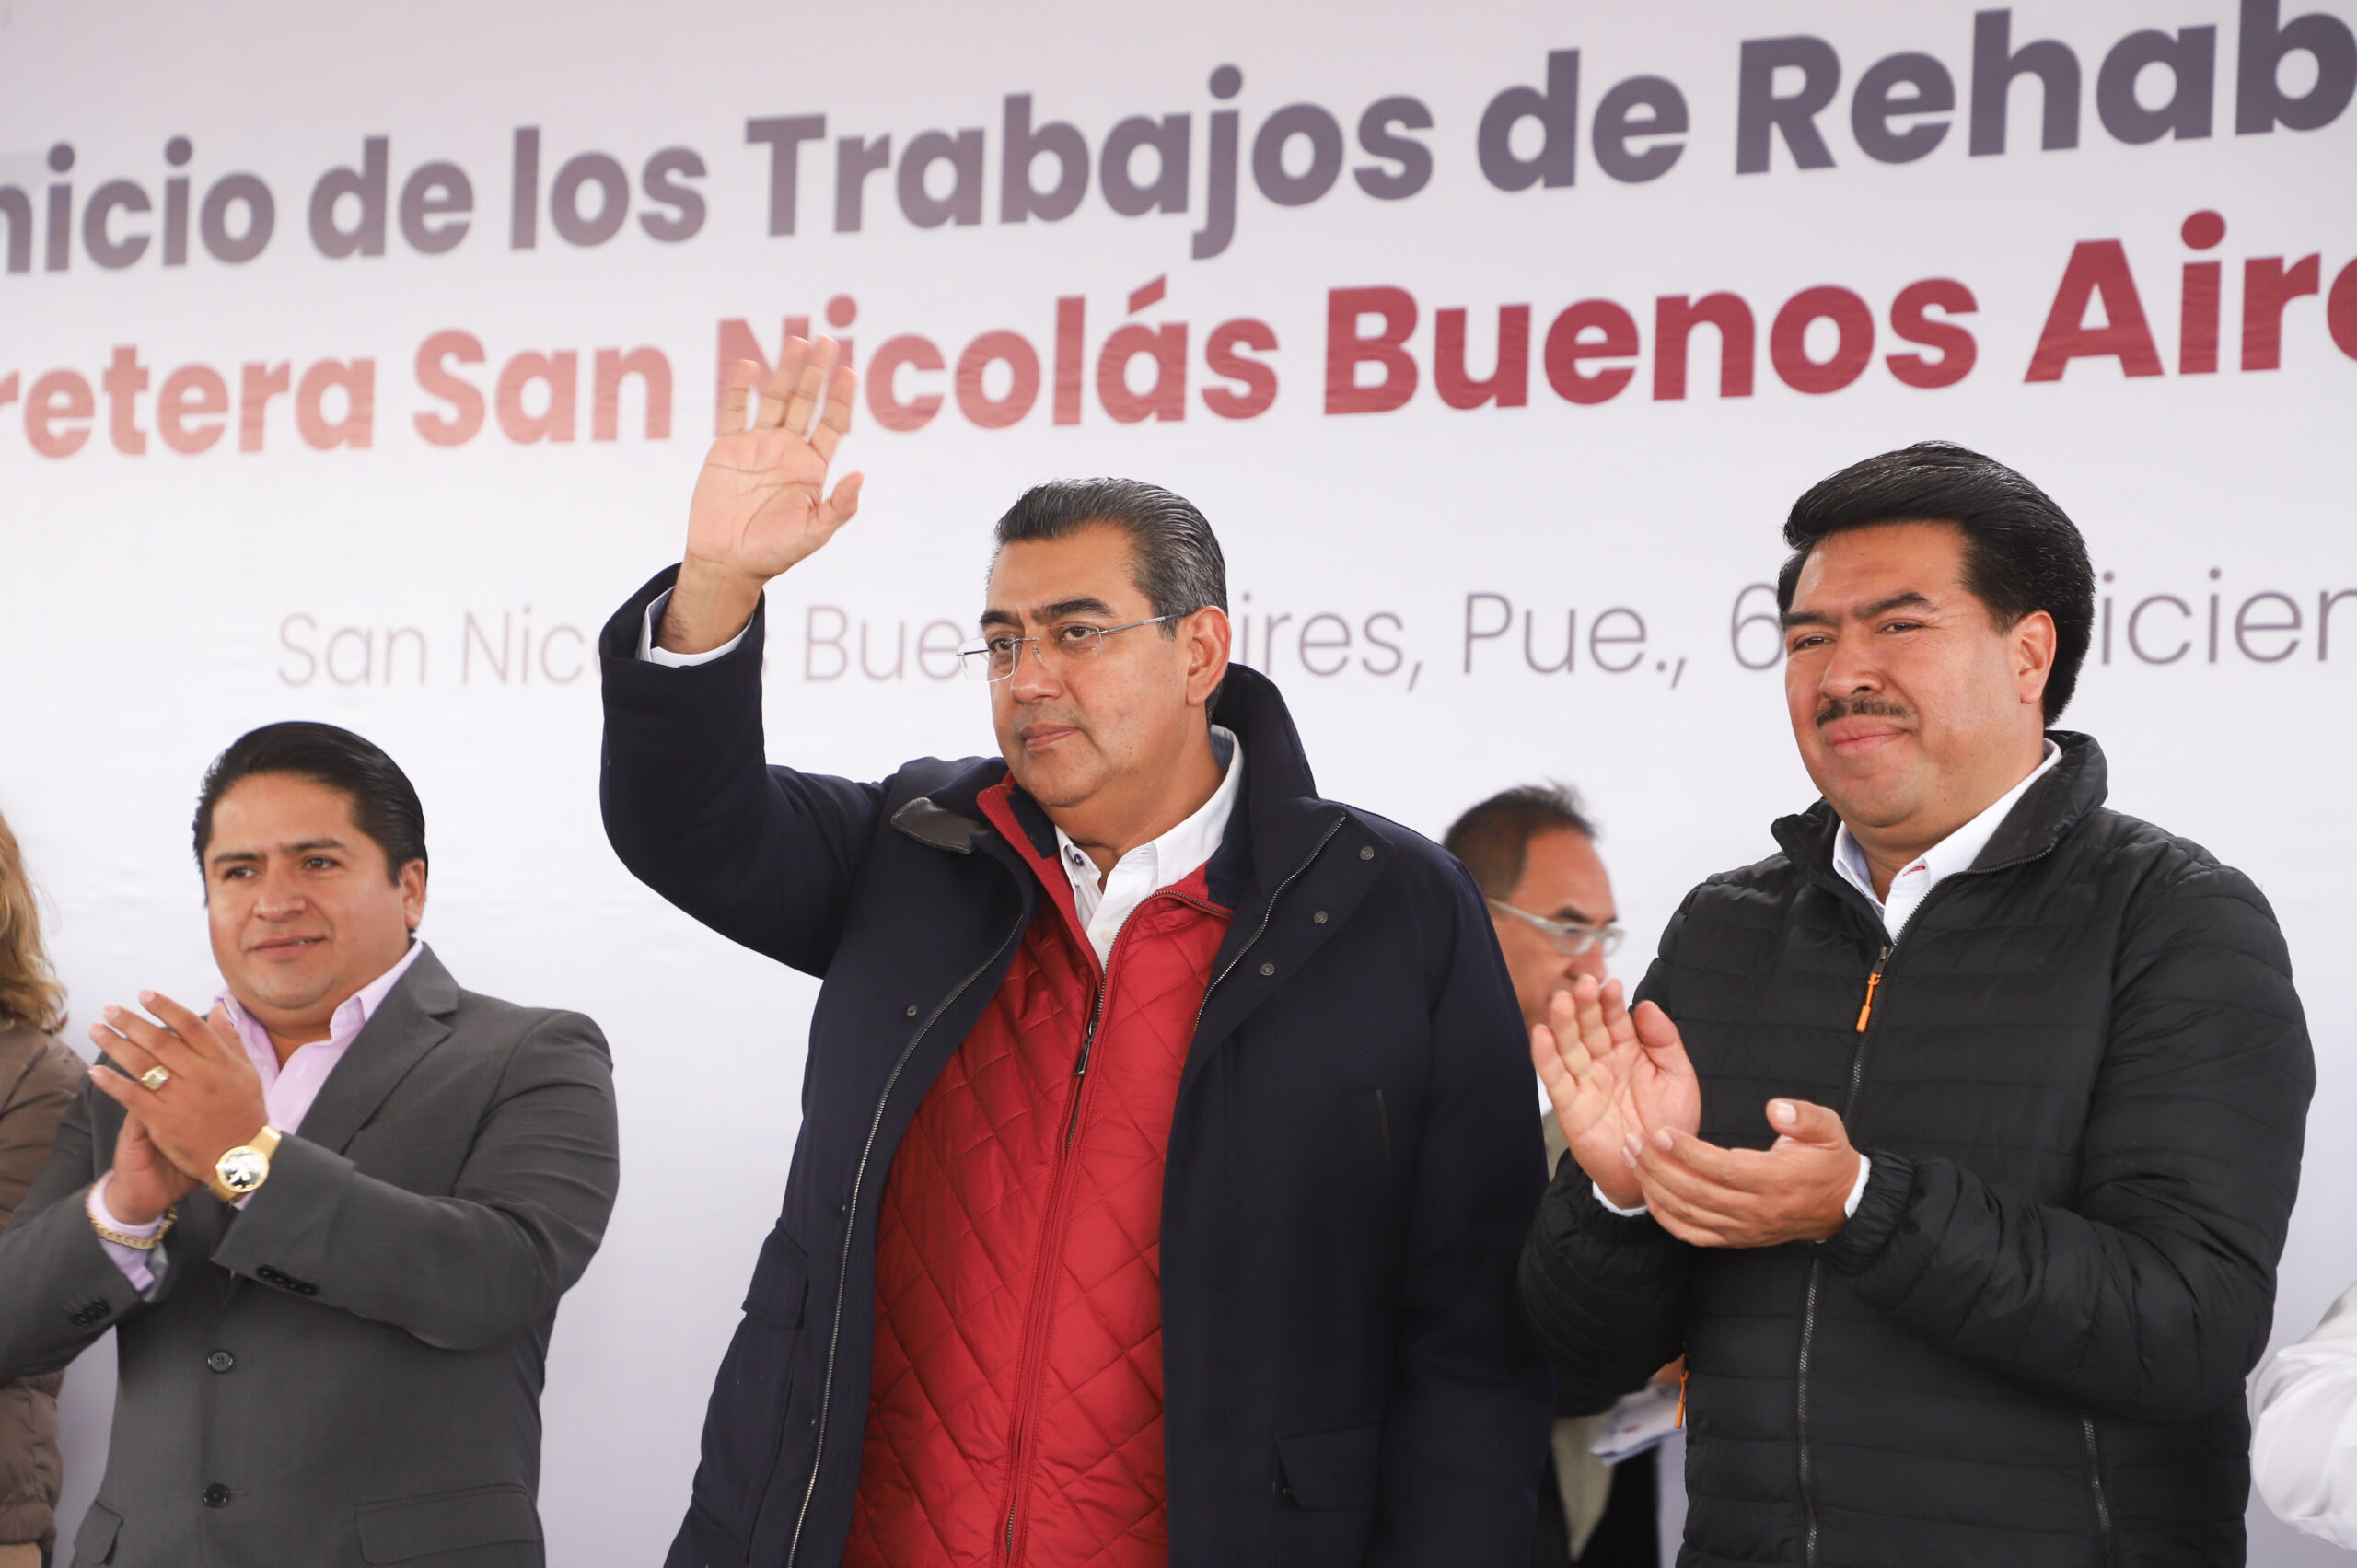 En San Nicolás, Acatzingo y San Salvador, Sergio Salomón fortace el desarrollo de la comunidad con obras de infraestructura y programas de bienestar